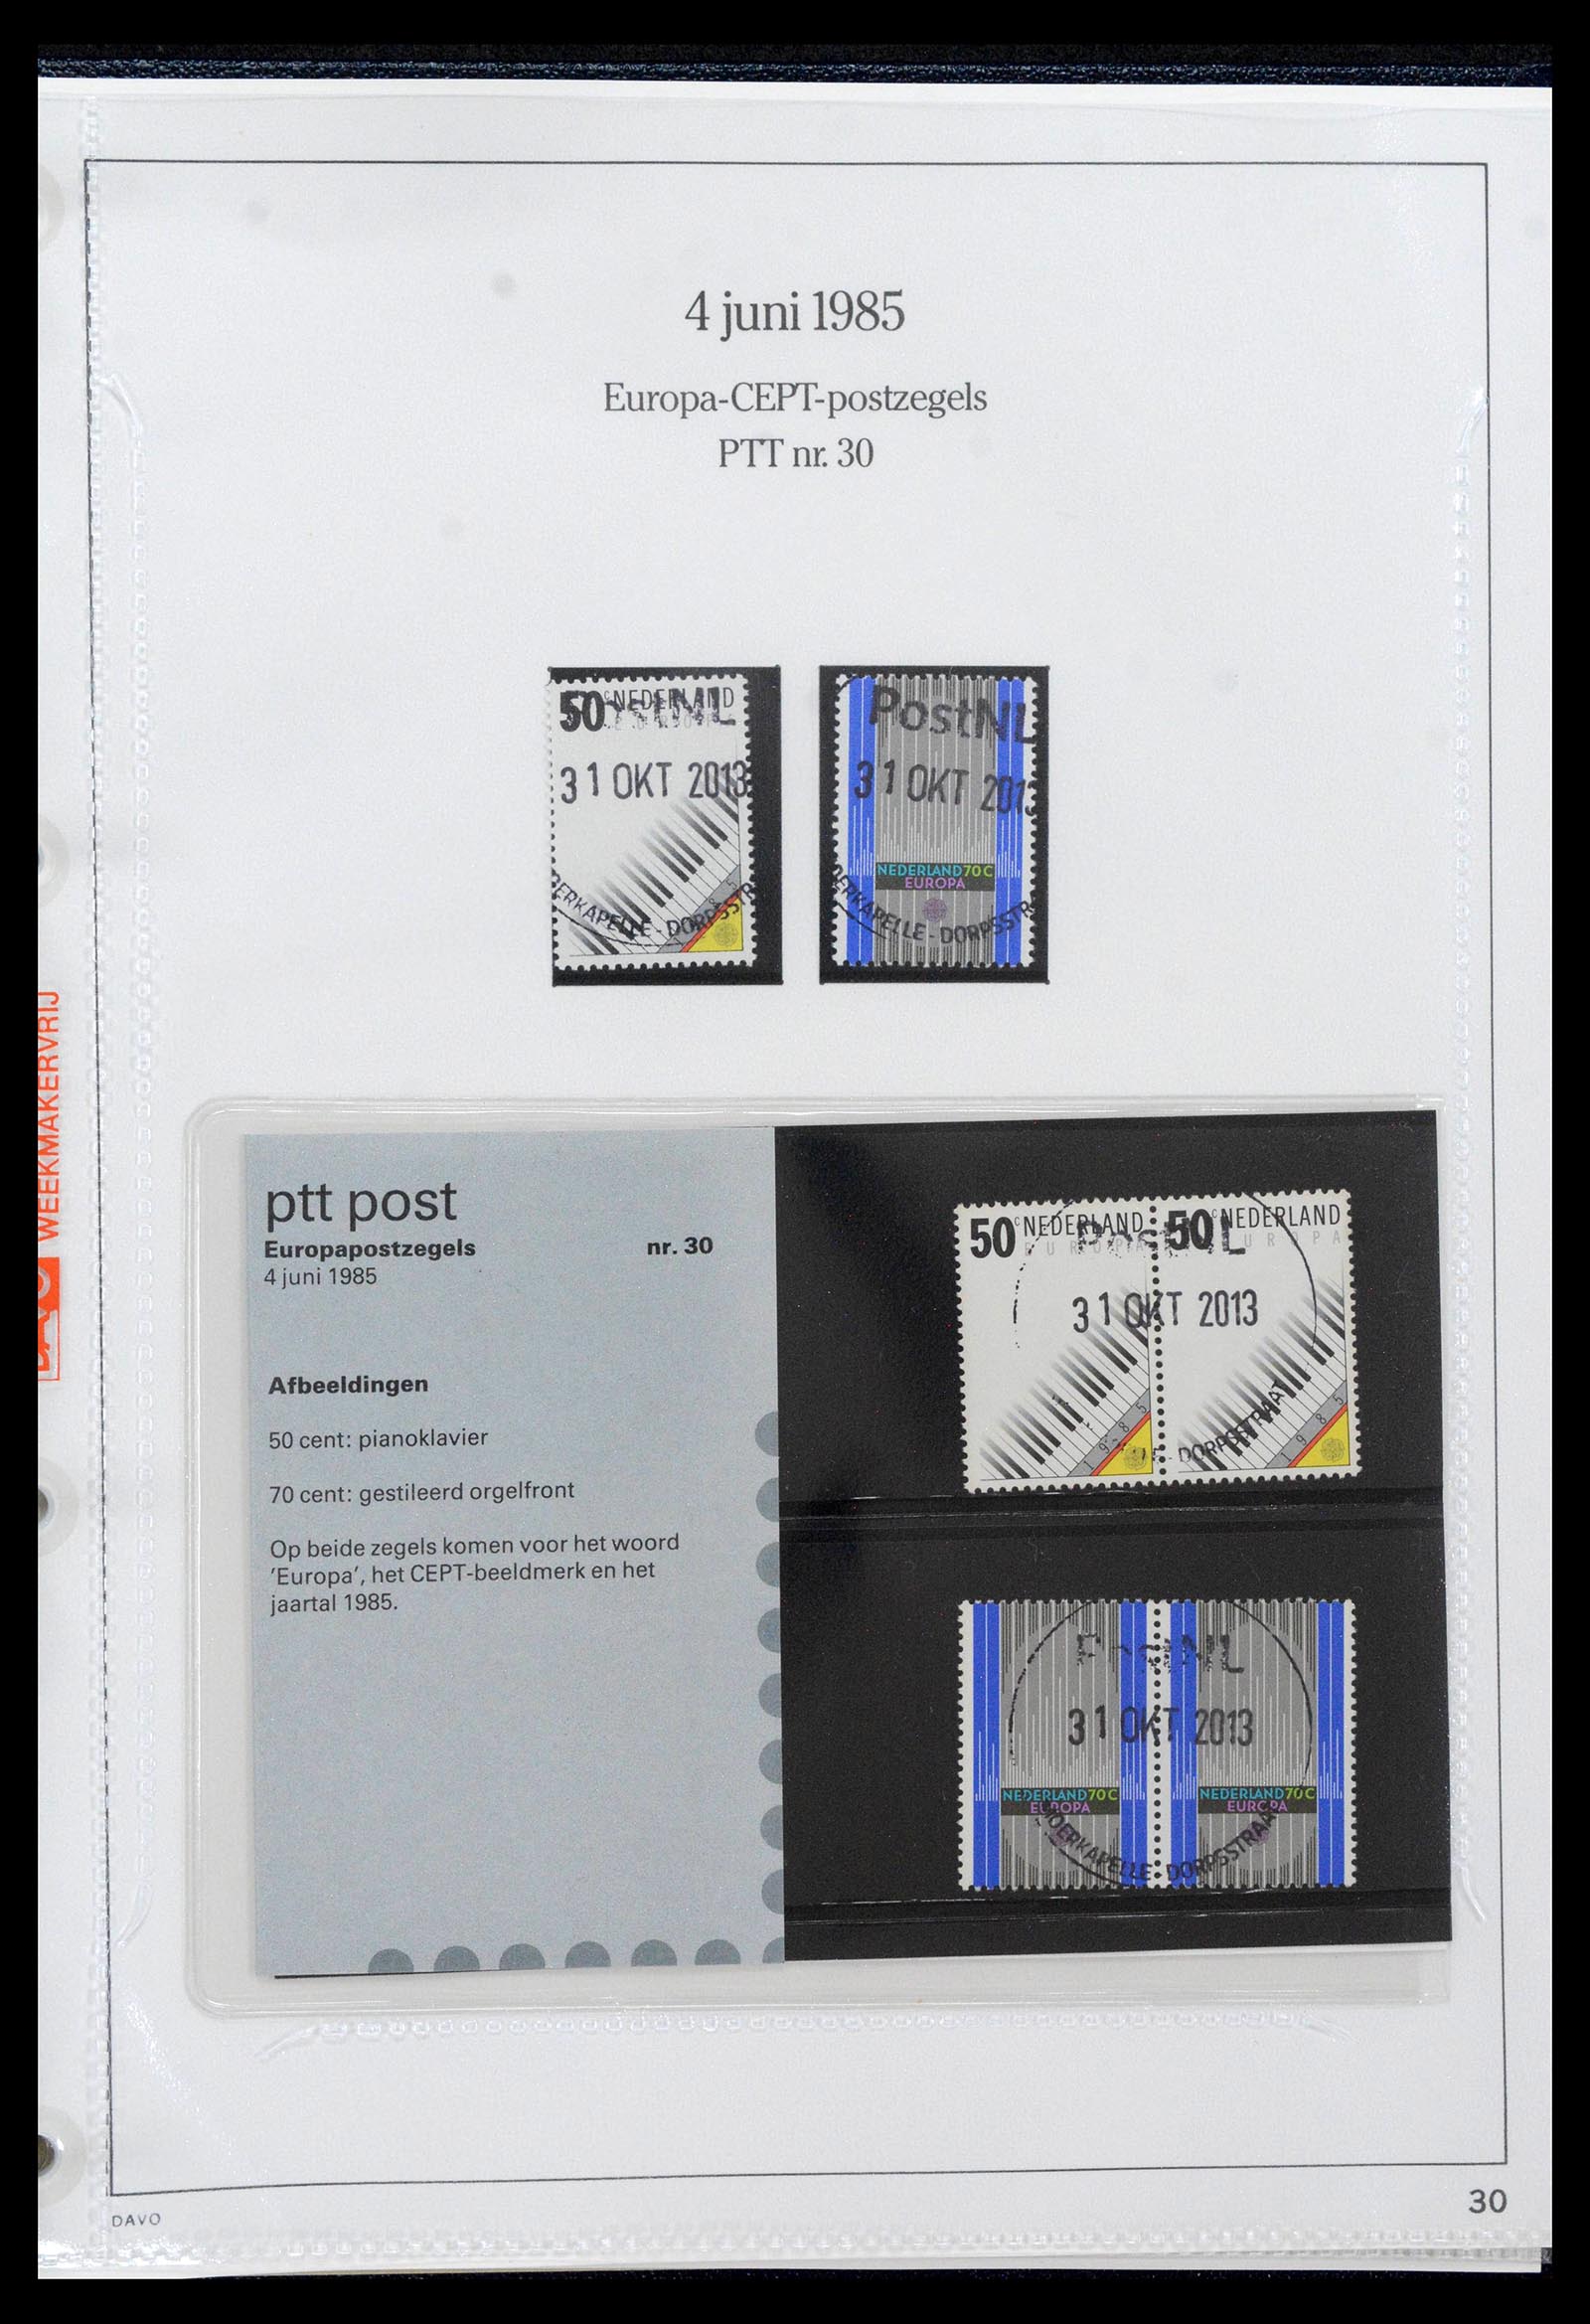 39121 0030 - Stamp collection 39121 Netherlands presentationpacks 1982-2001.